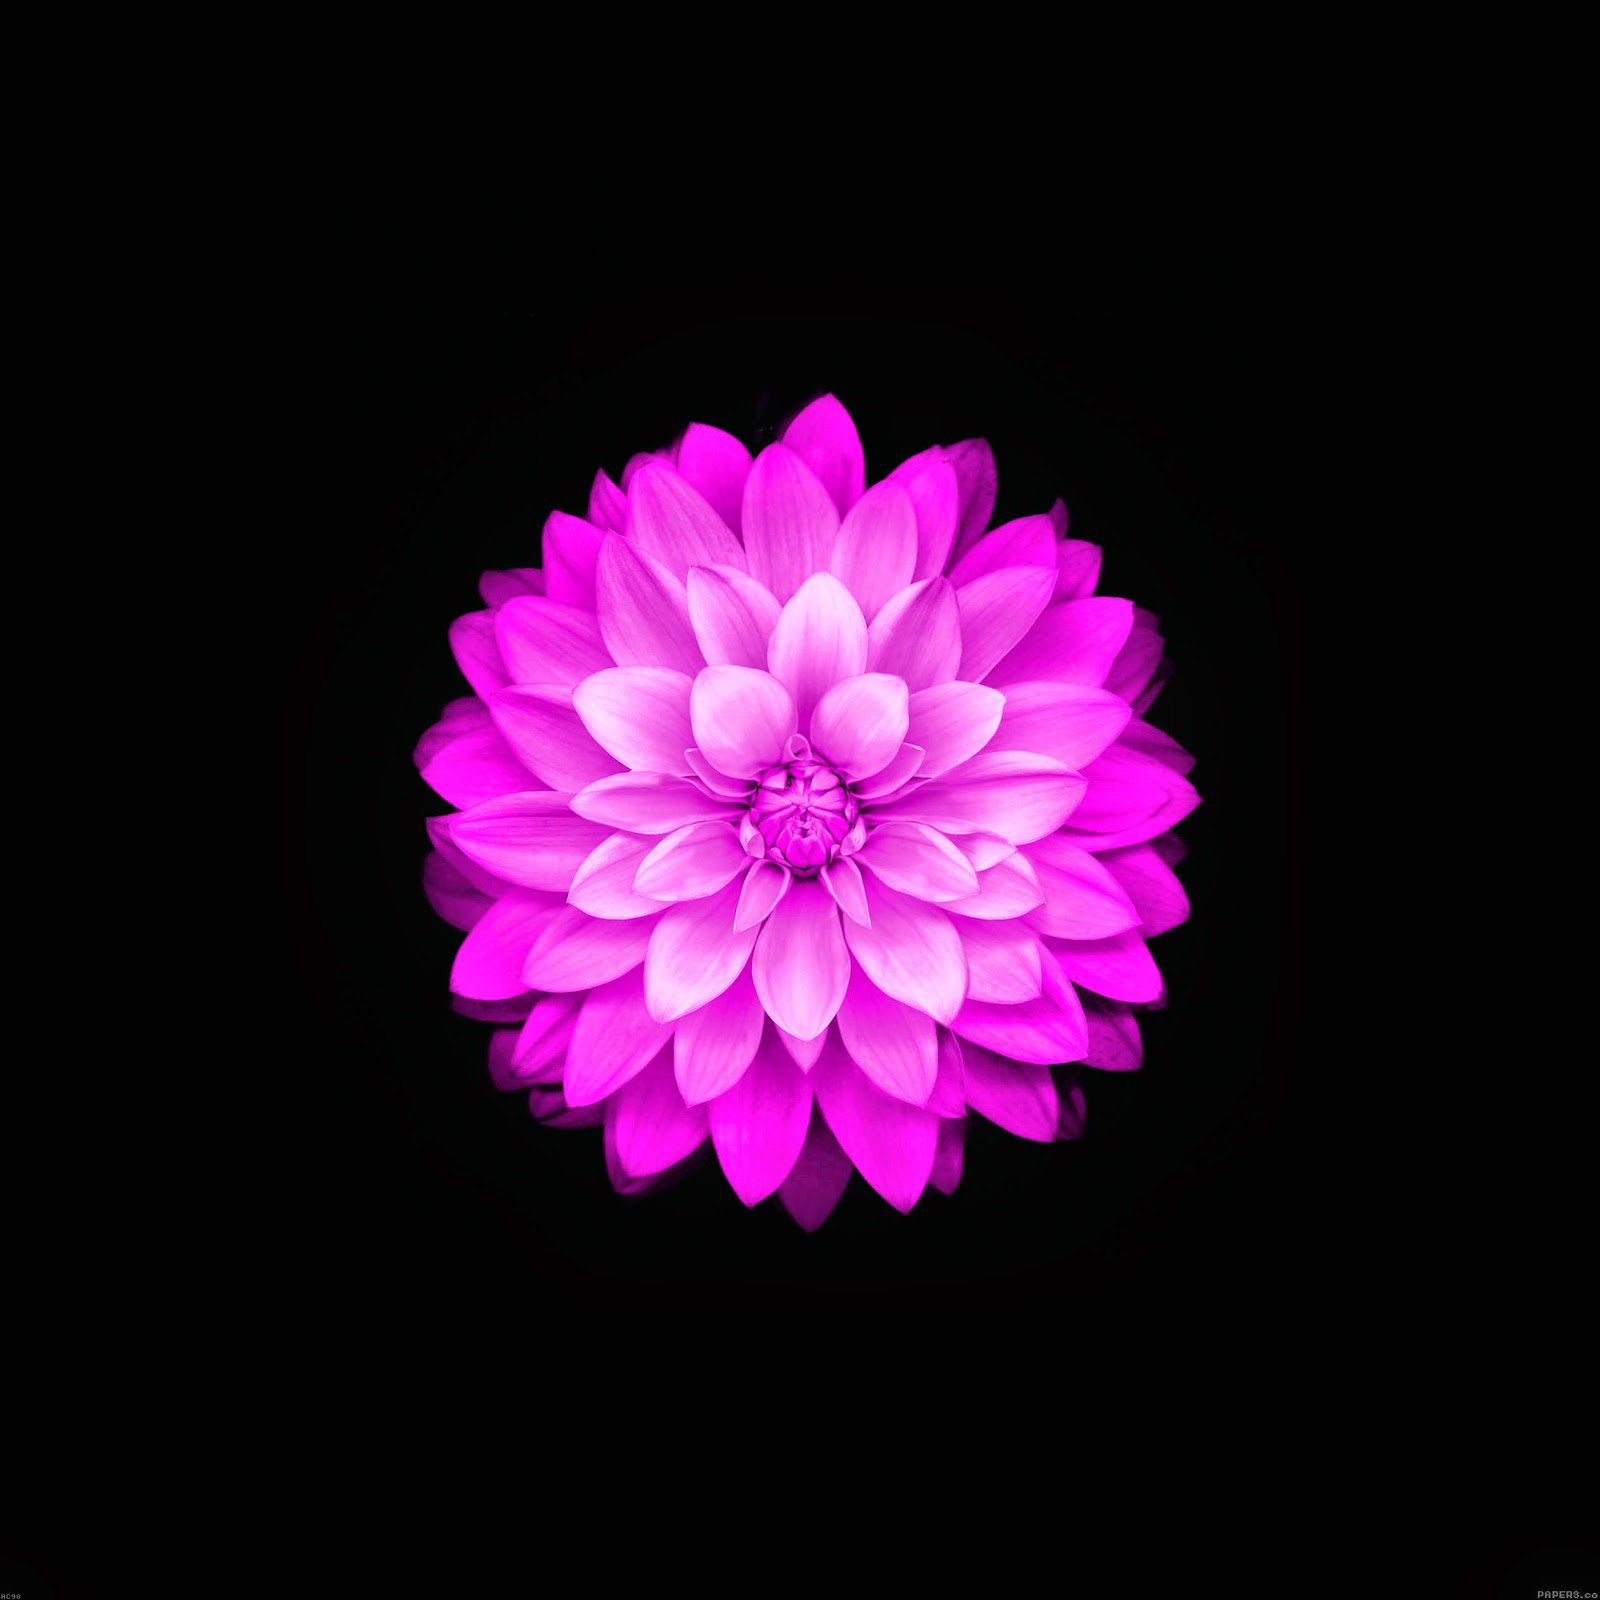 Iphone Flower Wallpaper - Samsung Flower Wallpaper Hd , HD Wallpaper & Backgrounds